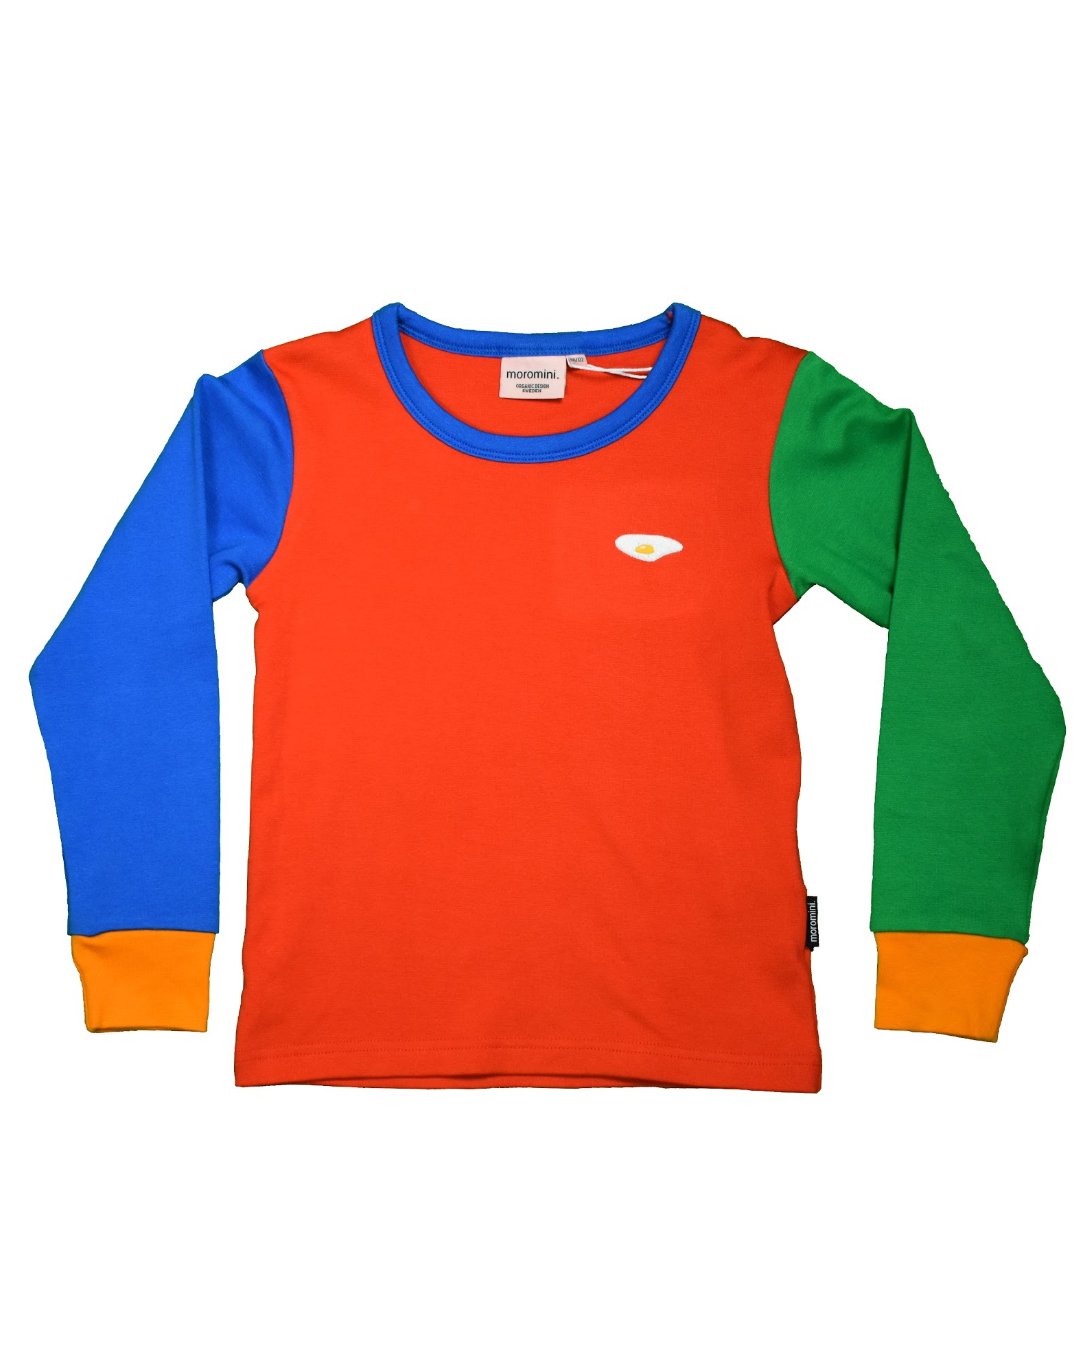 buntes Shirt für Kinder aus Biobaumwolle von moromini